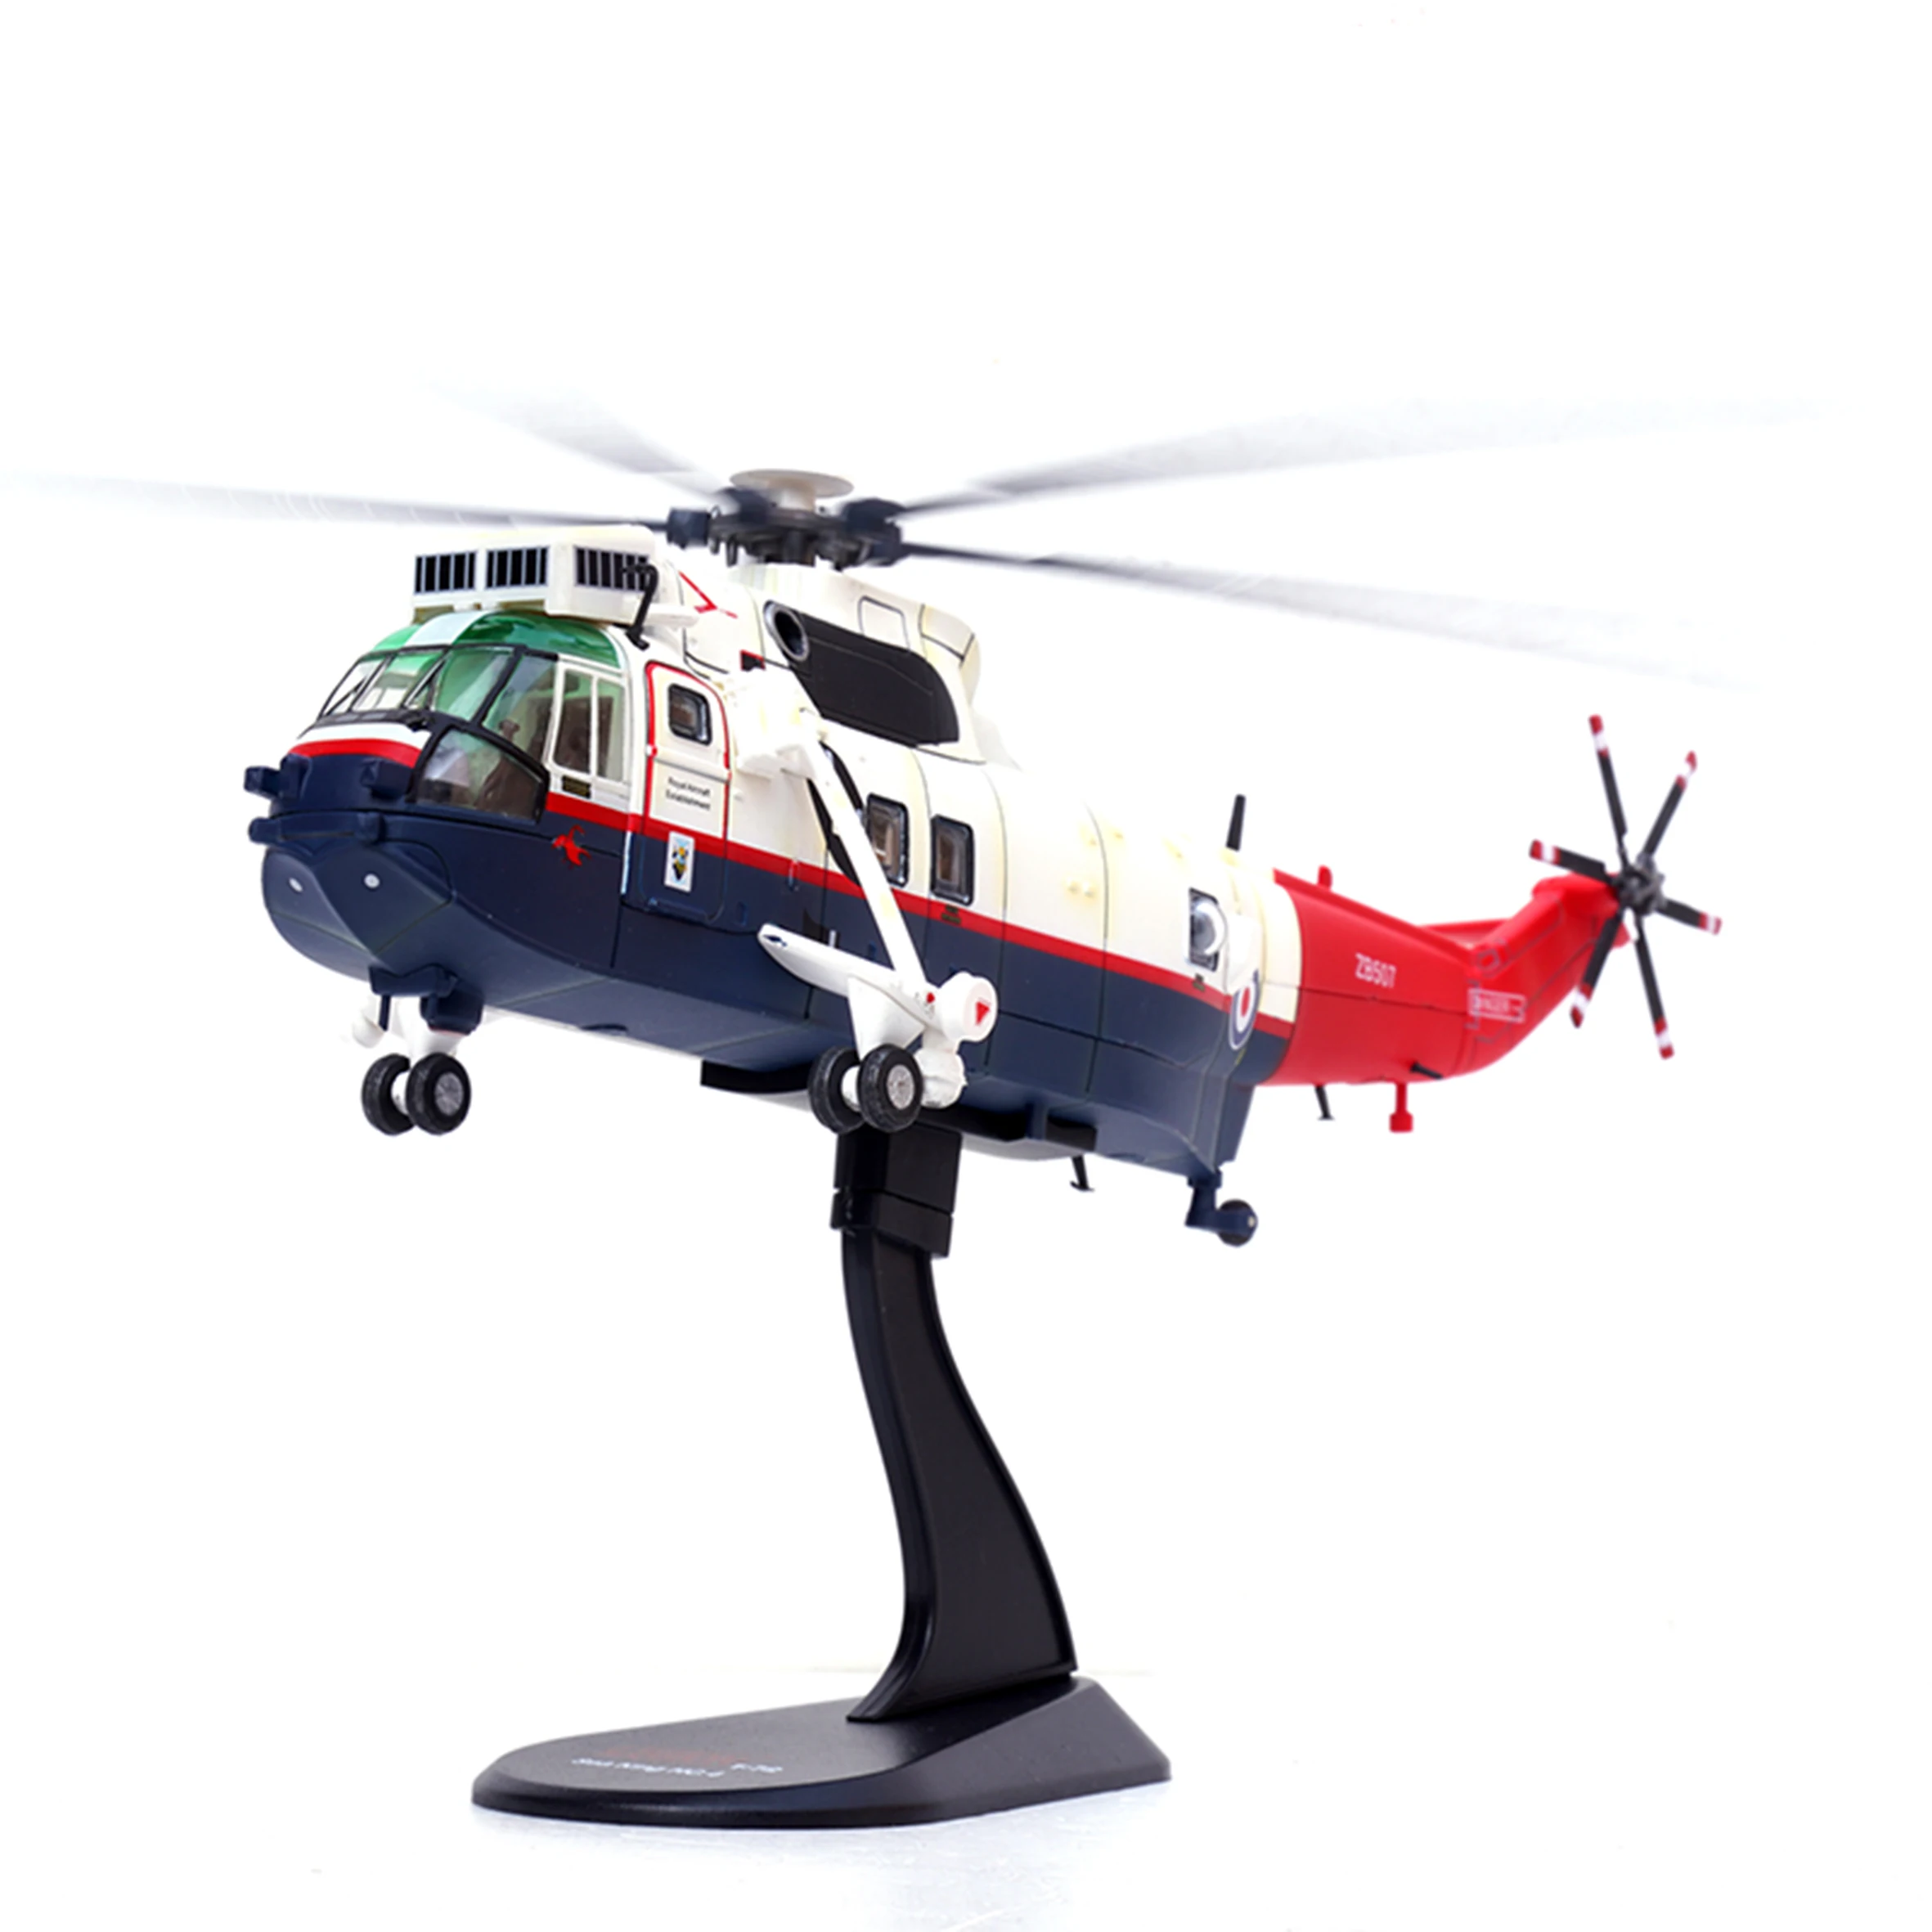 

Модель 1/72 вертолета в британском стиле Sea King, Westland Assault Team HC/4 zb507b ', Коллекционная модель готовой продукции